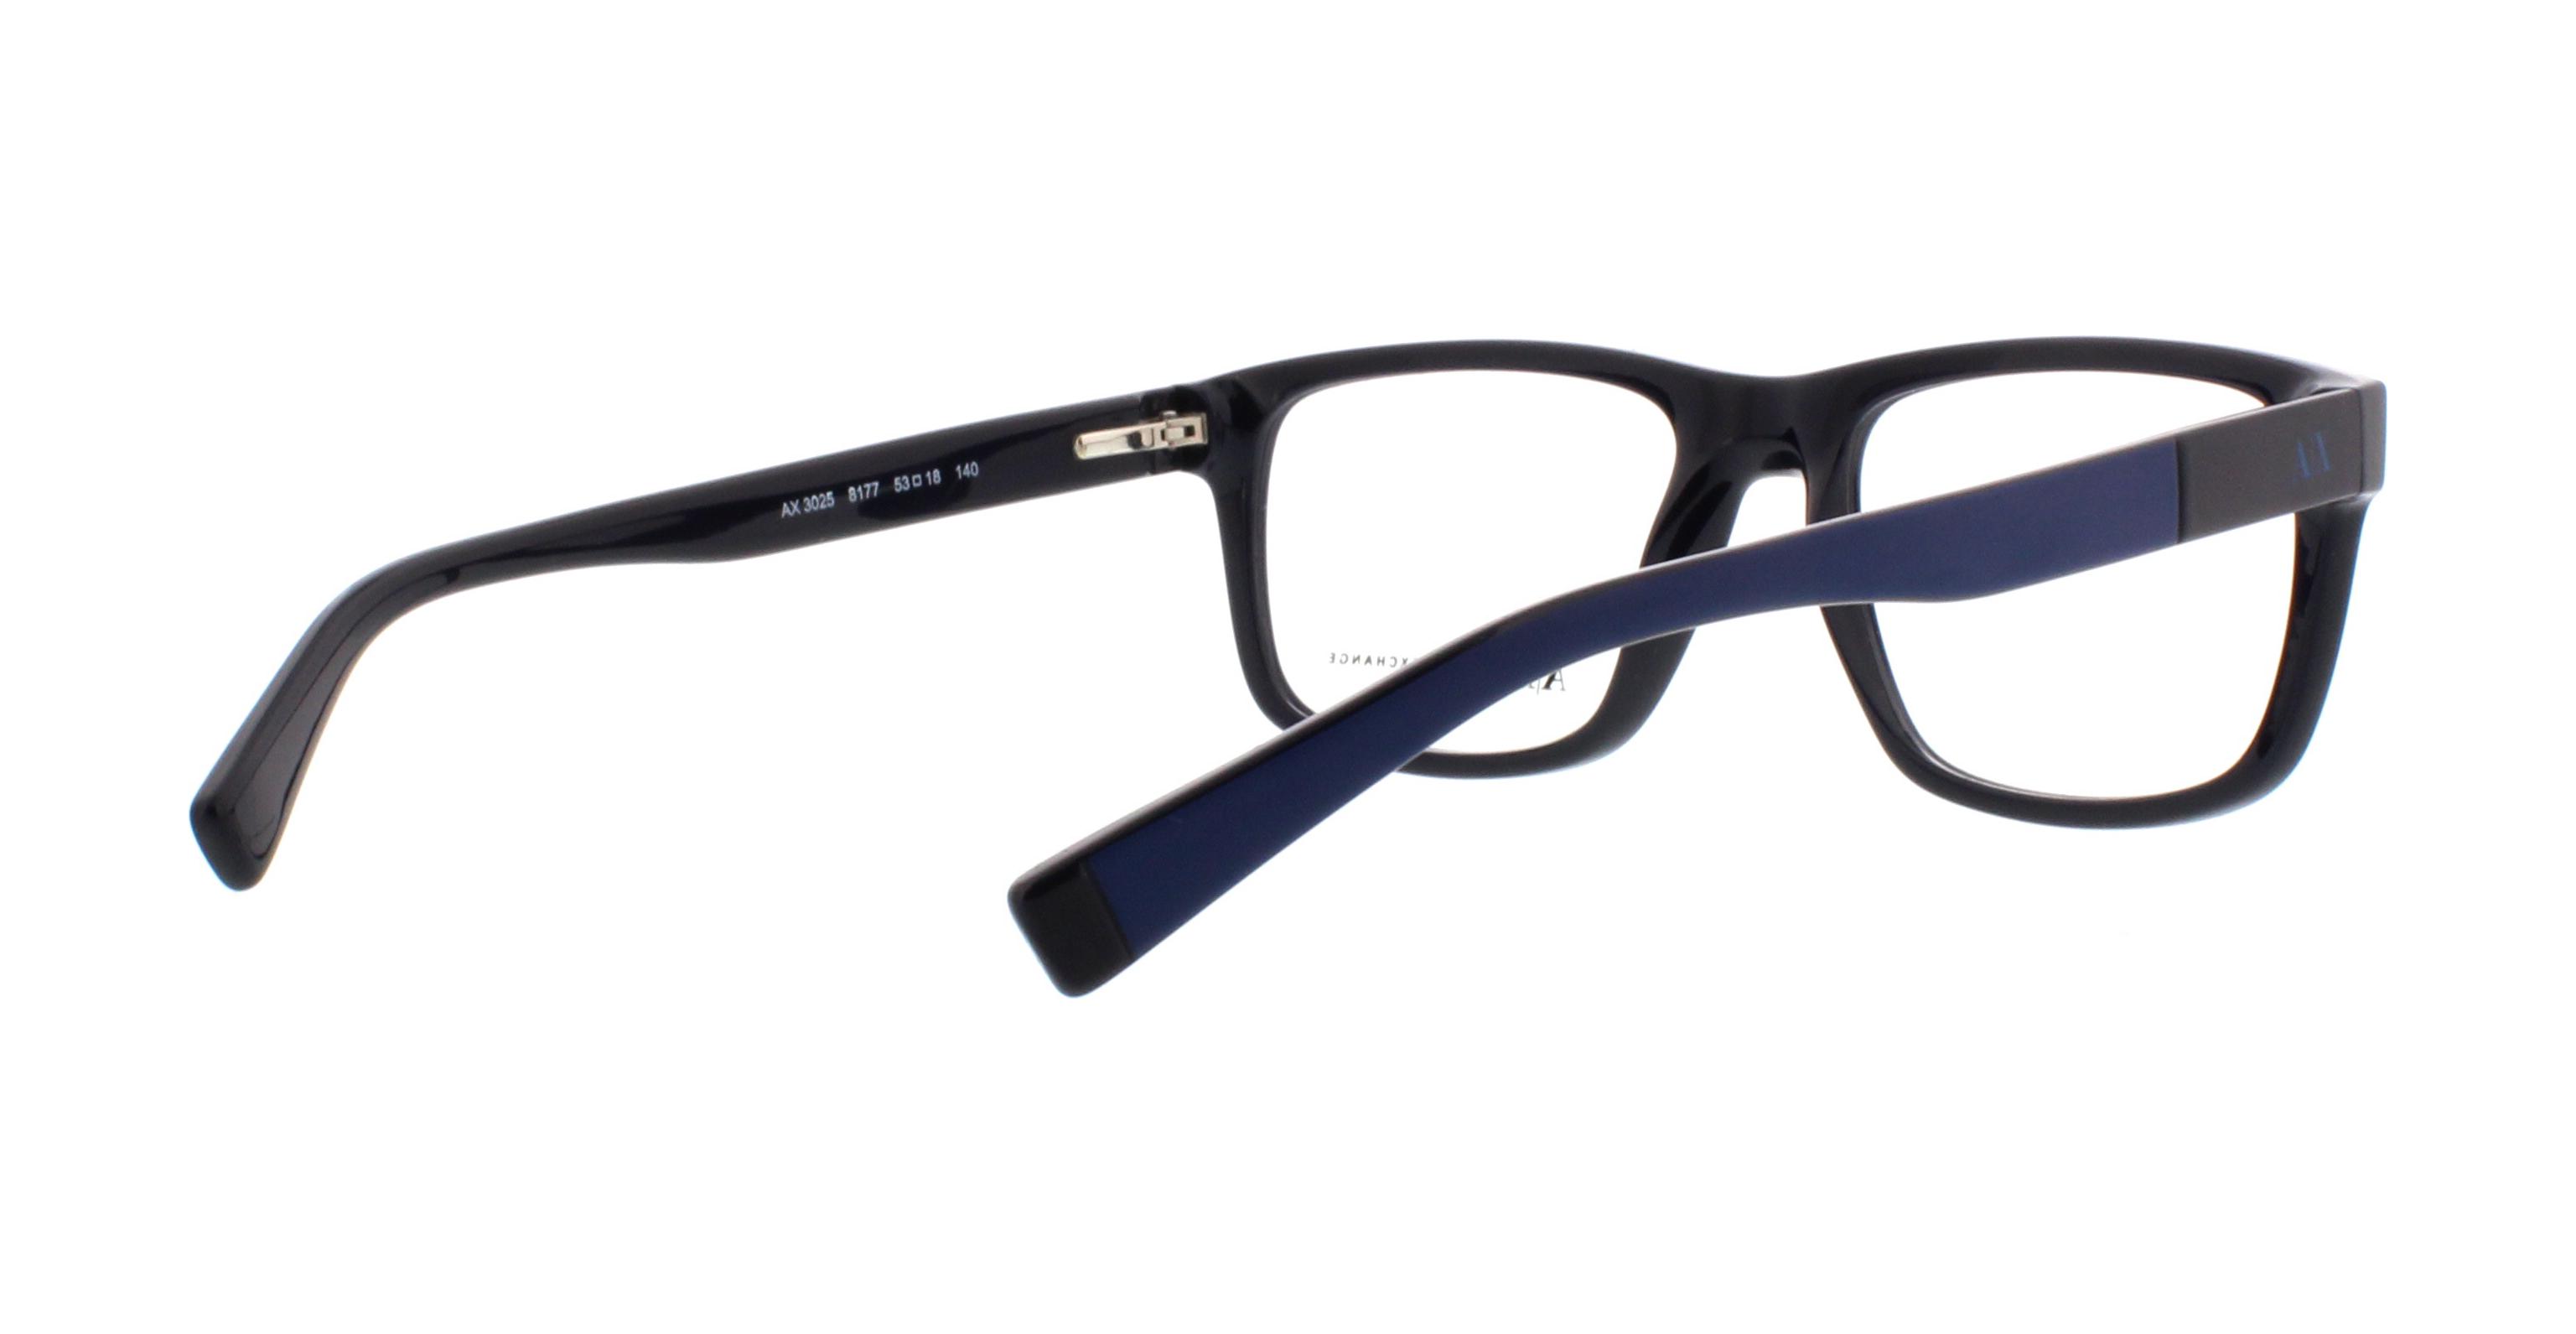 Designer Frames Eyeglasses Outlet. AX3025 Armani Exchange